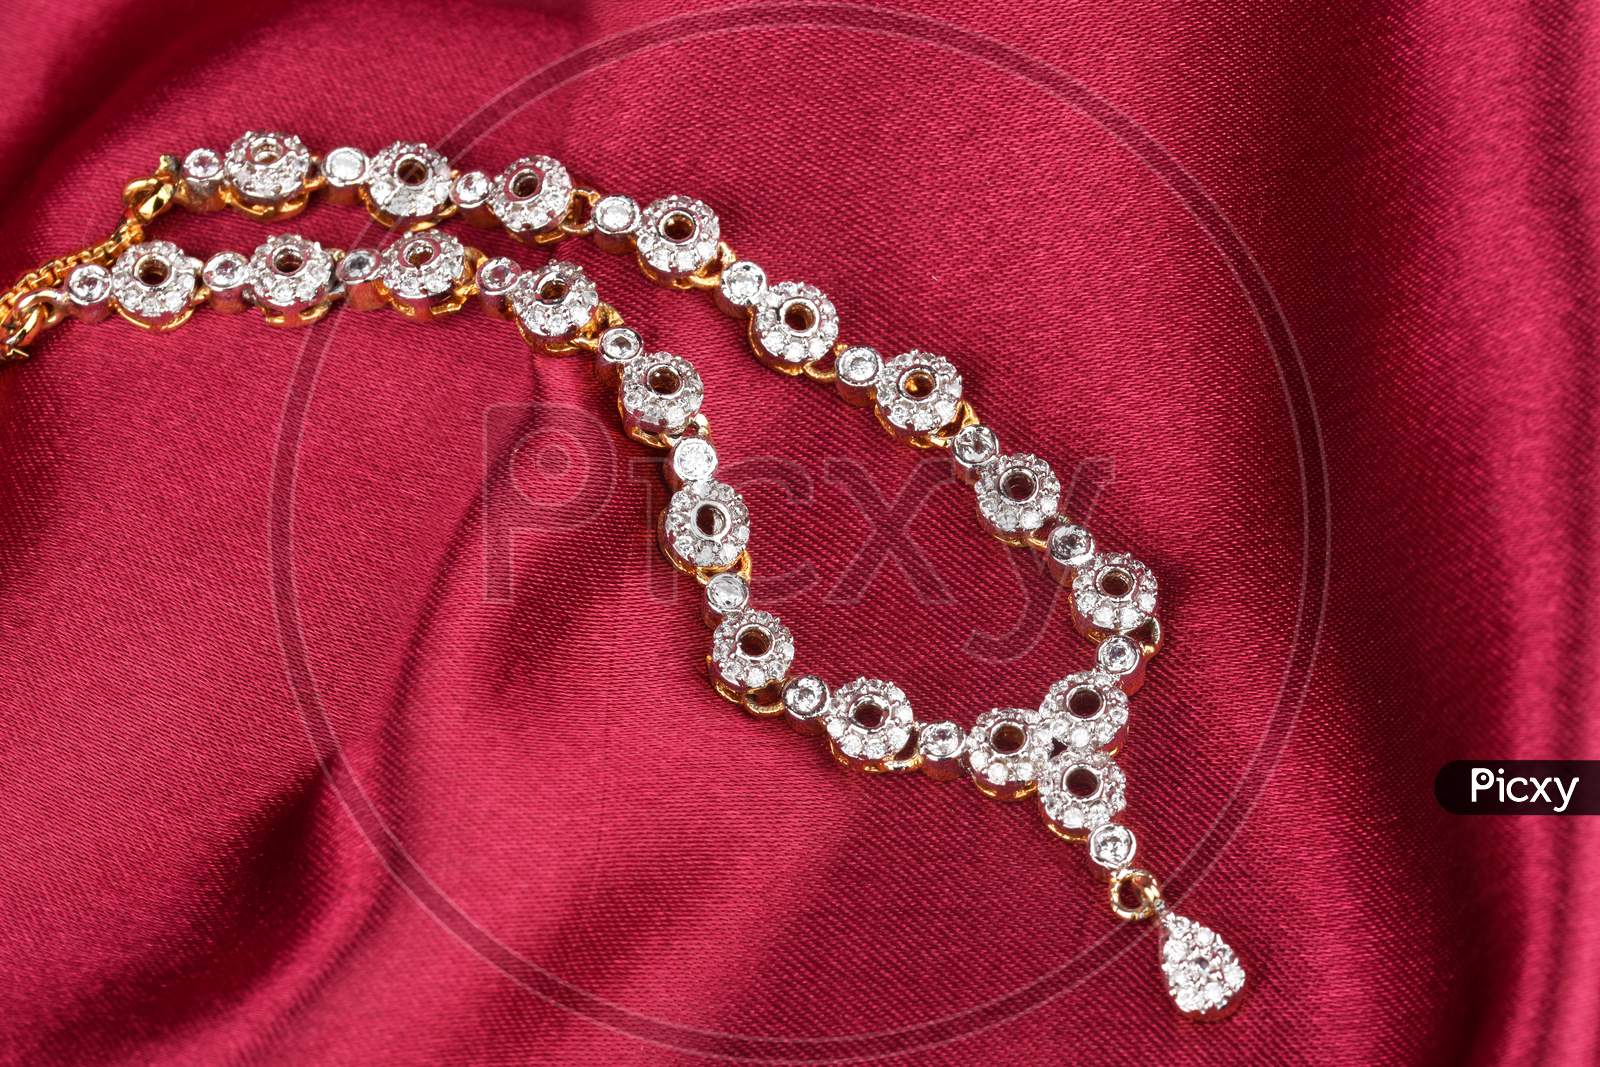 Diamond Jewelry Placed On Cloth, Diamond Pendant,Diamond Jewellery, Diamond Necklace